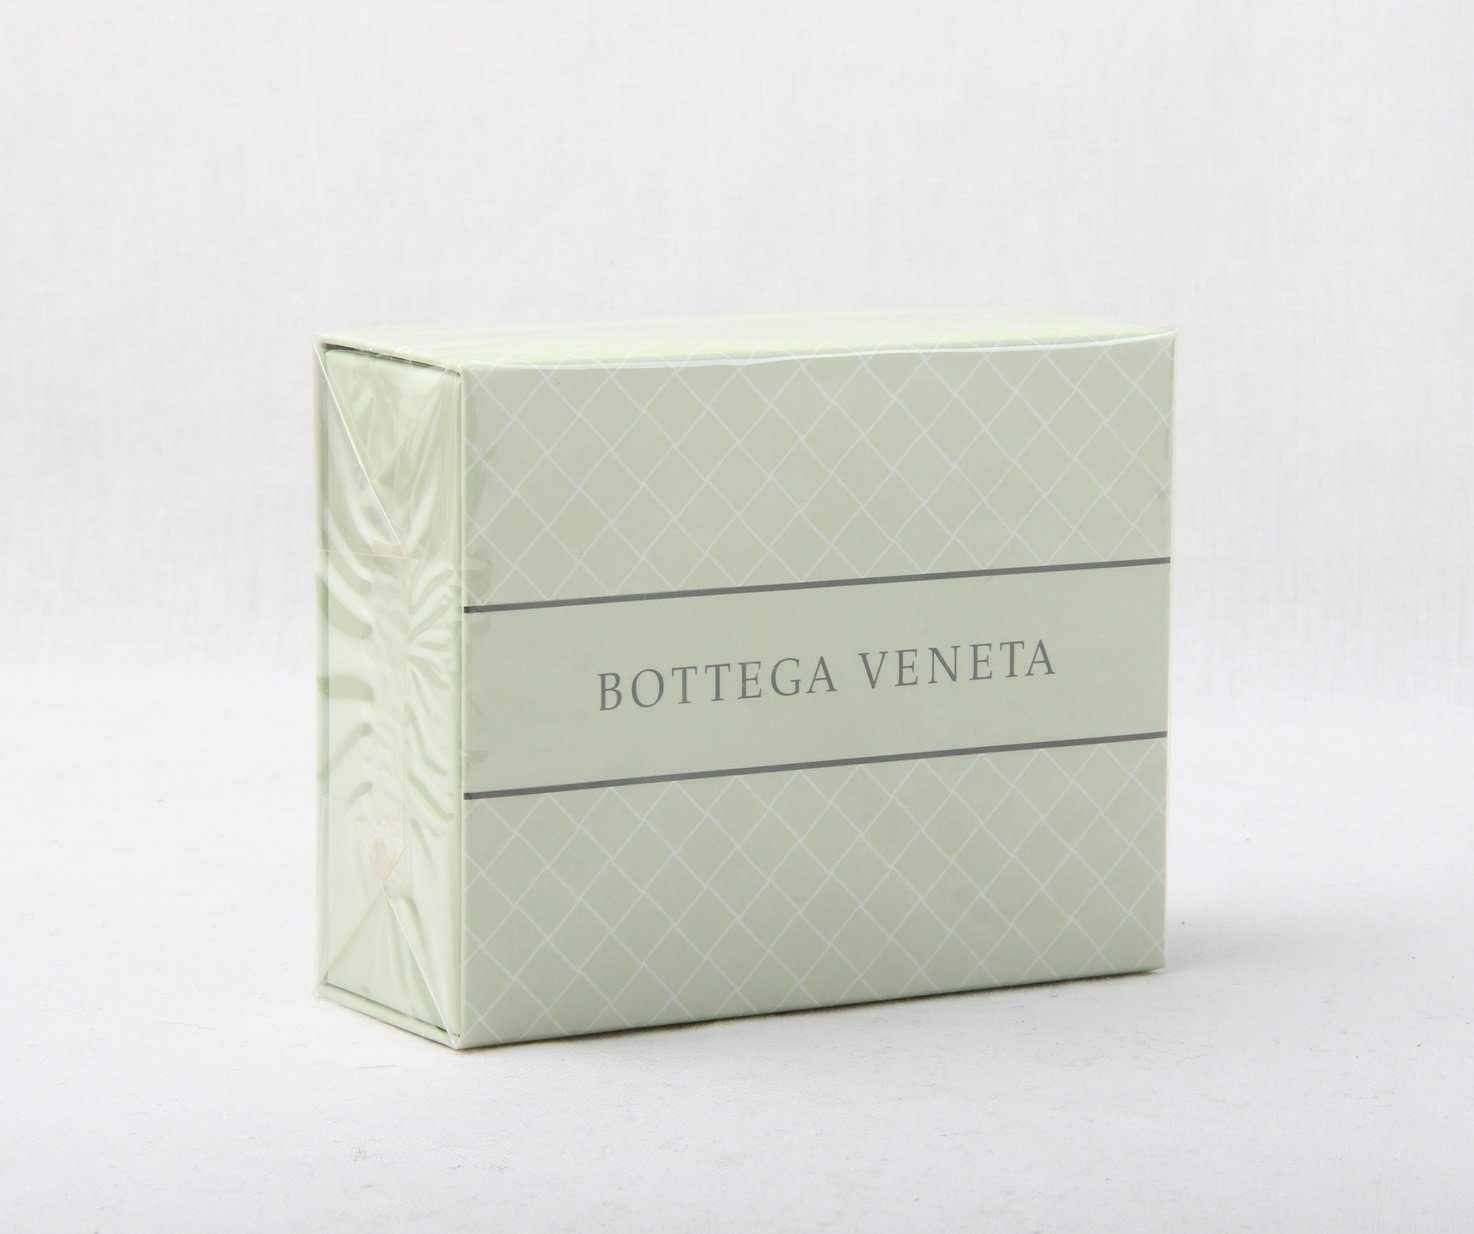 Veneta Bottega Essence VENETA BOTTEGA Seife Handseife Aromatique 150g Soap Perfumed